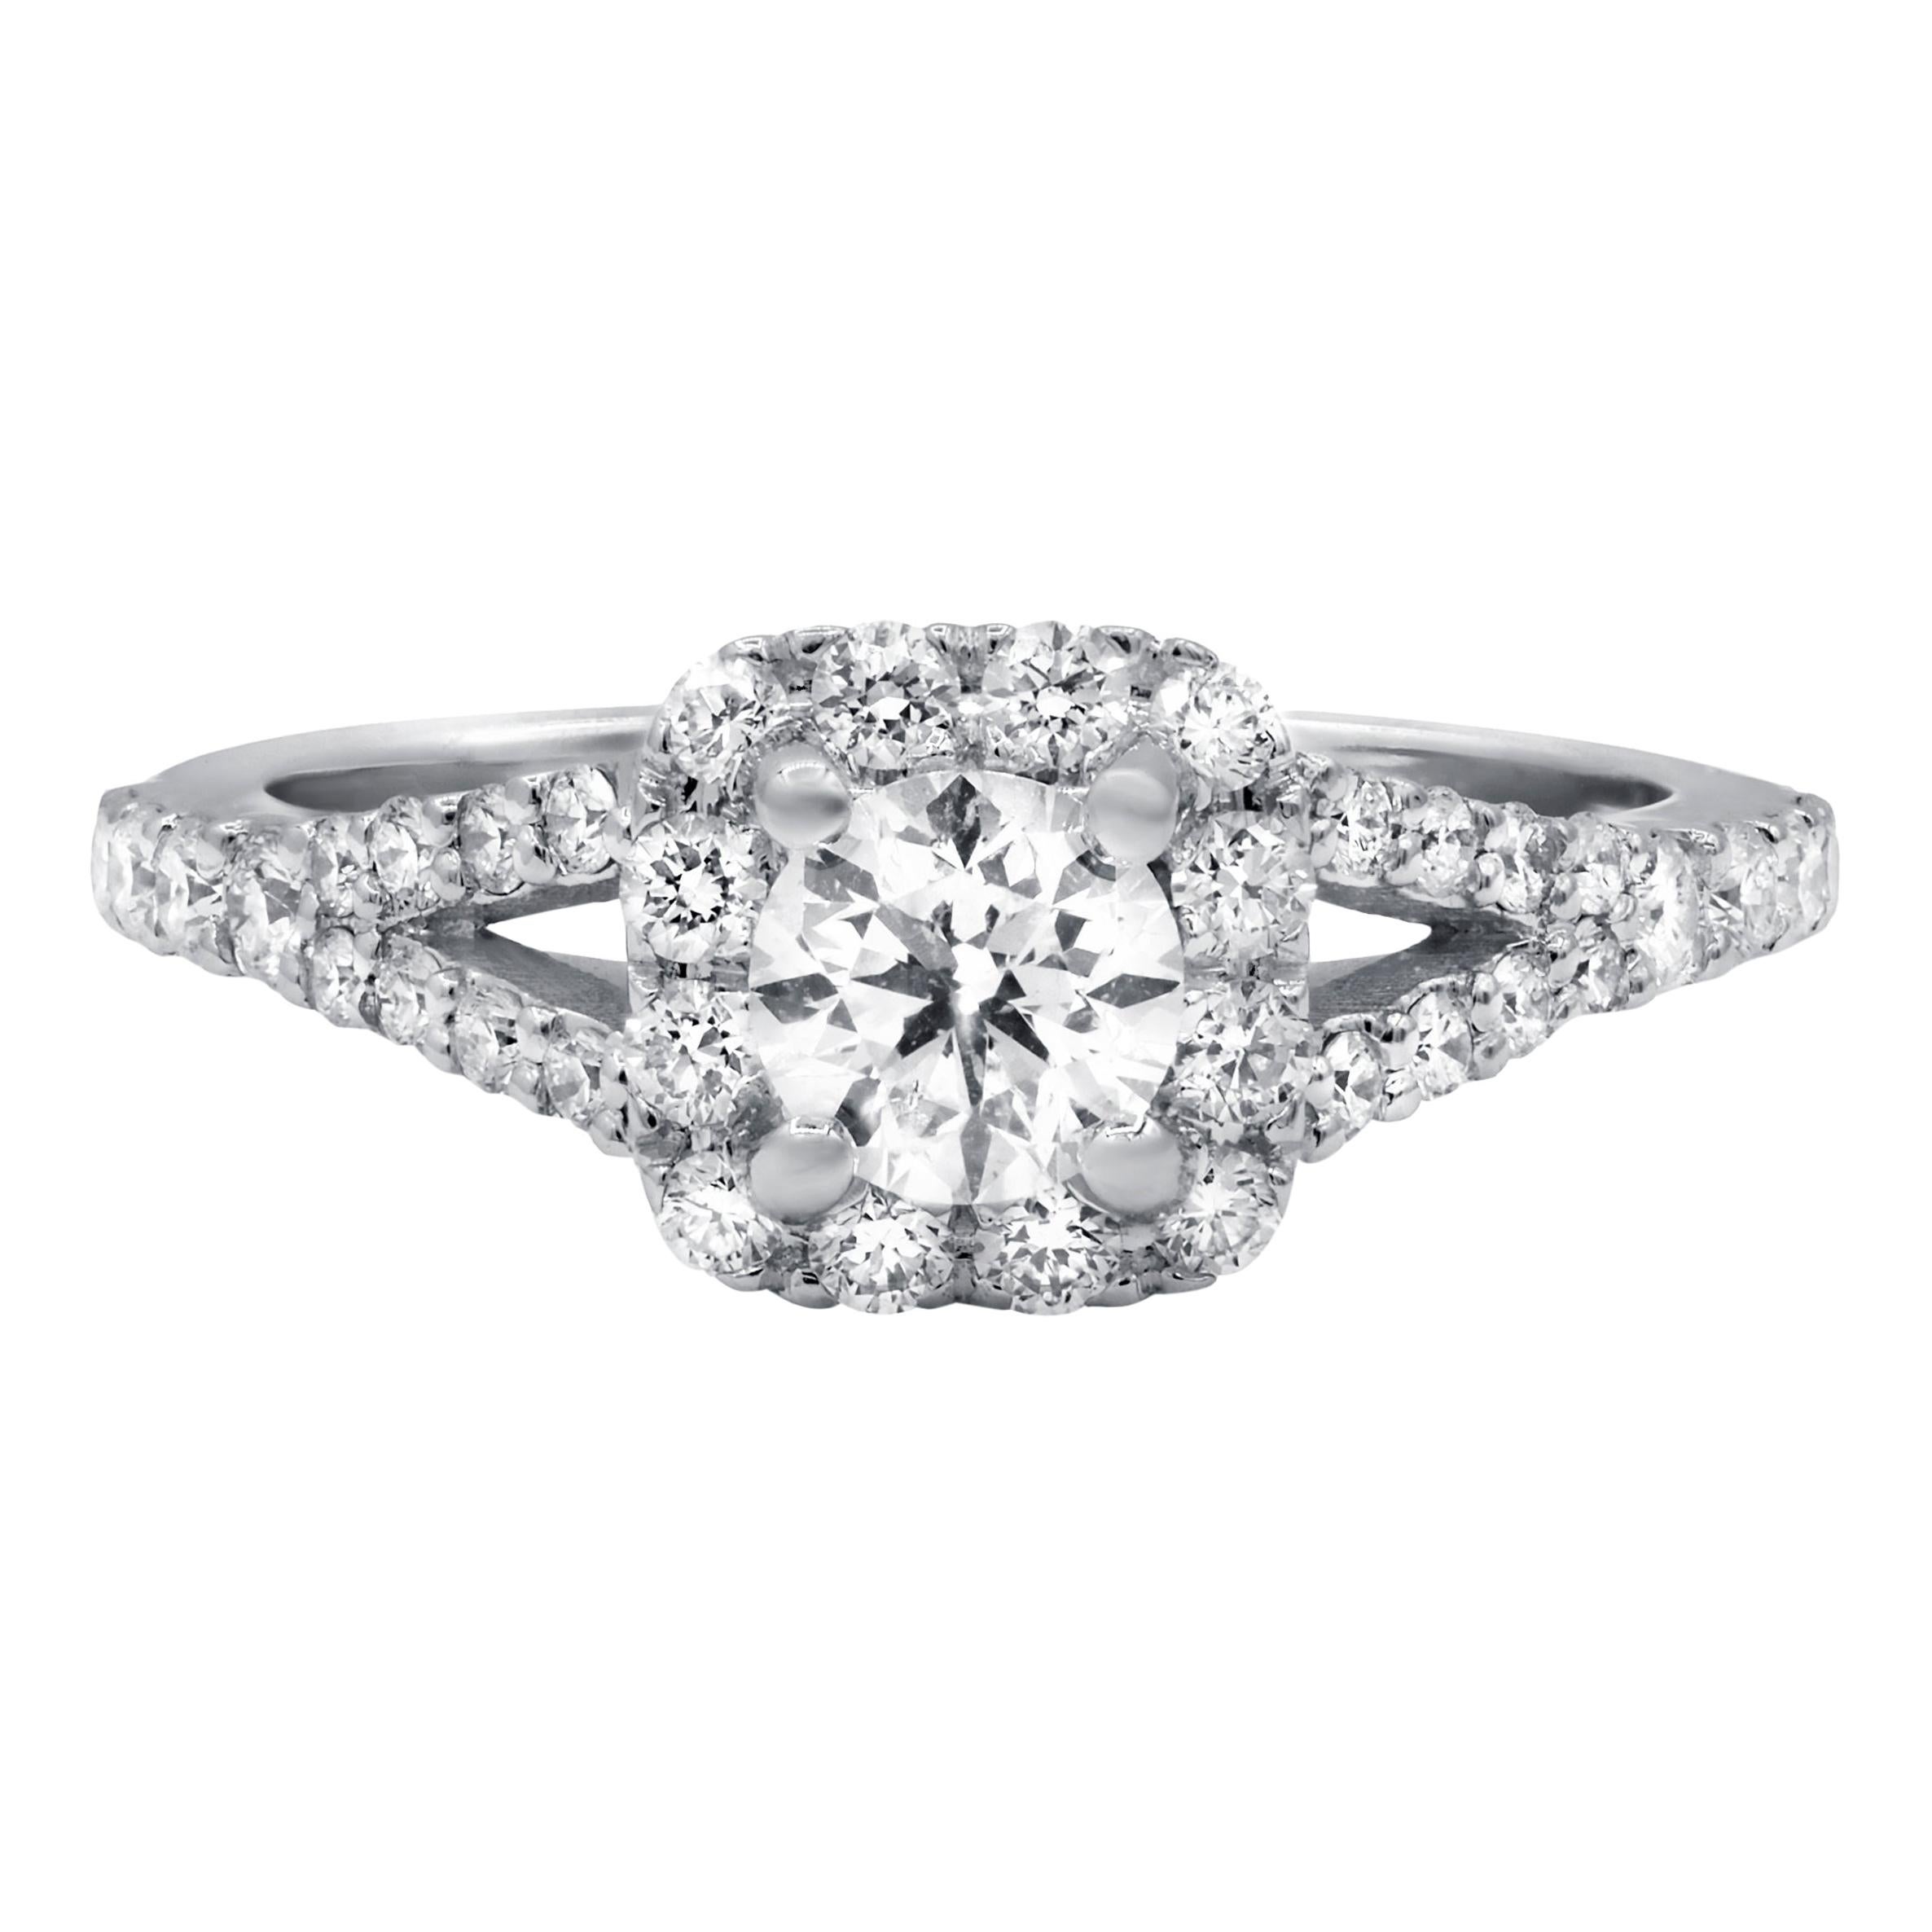 Diana M. Fine Jewelry 14k 1.11 Ct. Tw. Diamond Ring For Sale